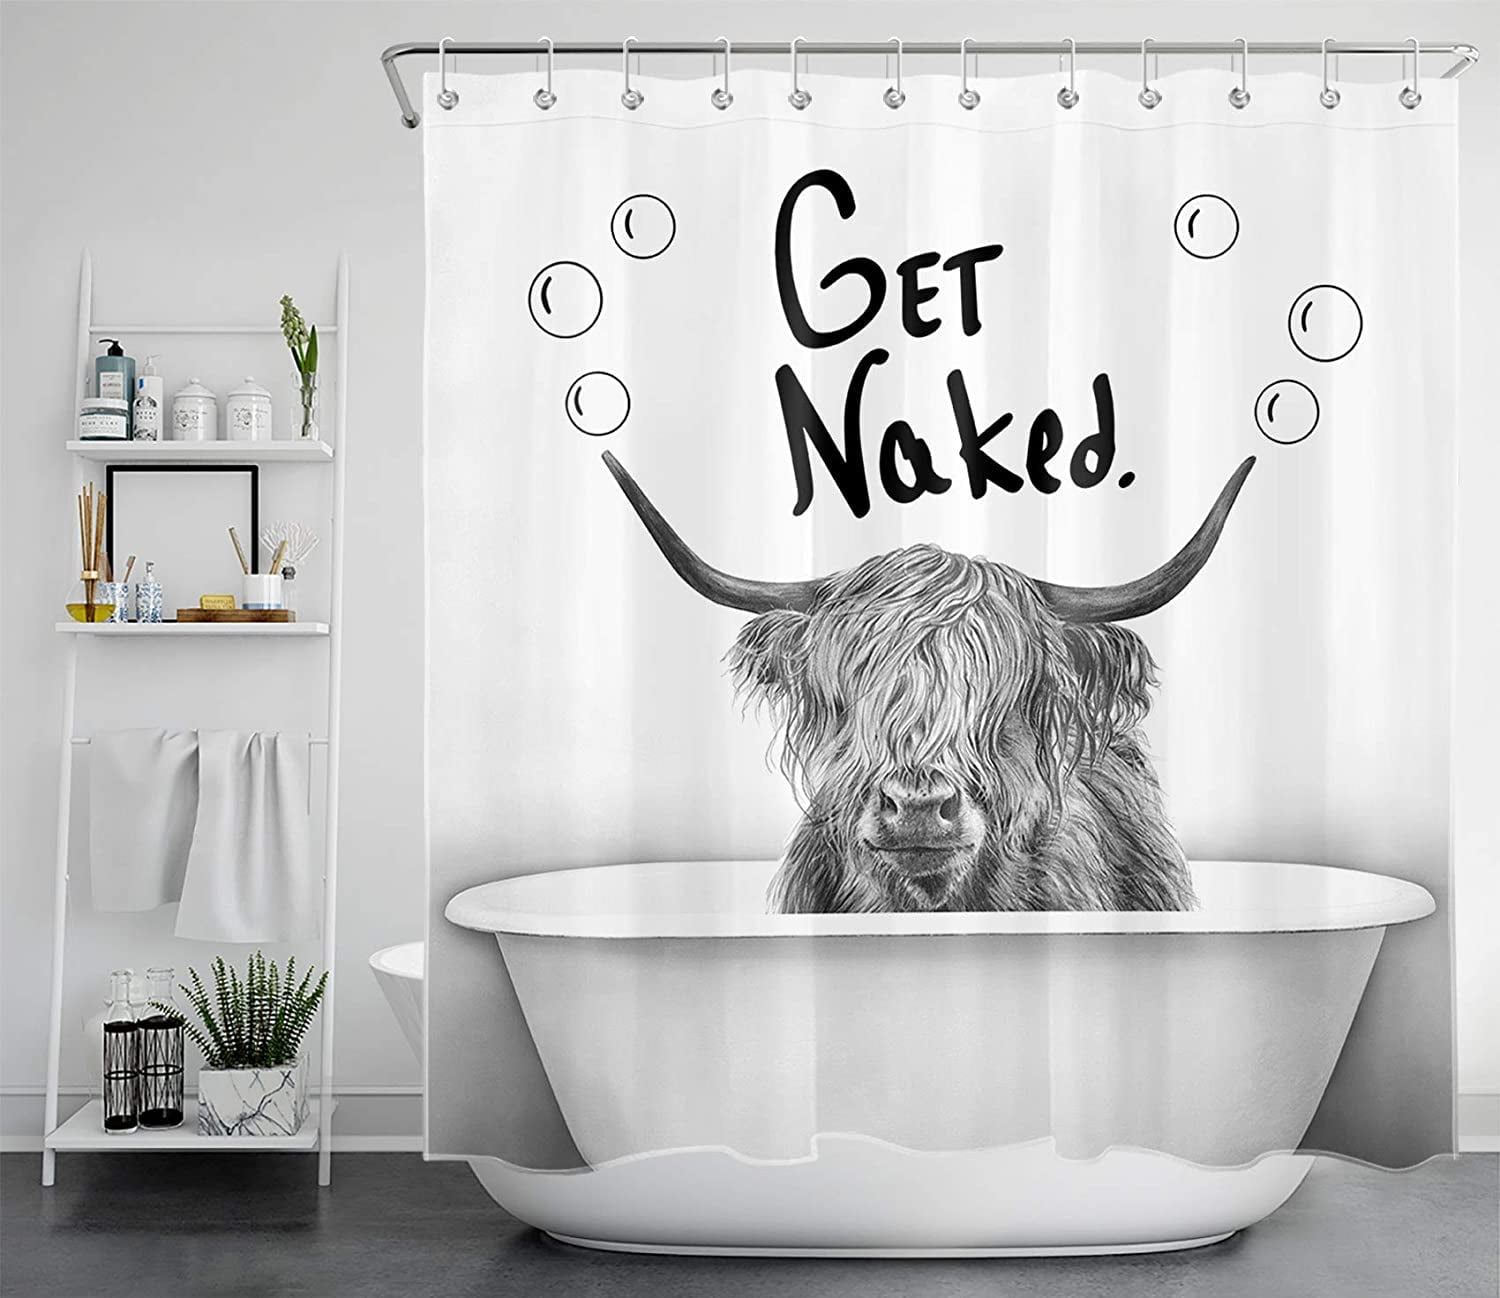 Beauty Bubble Bath Get Naked Shower Curtain Set Bathroom Fabric Bath Curtains 